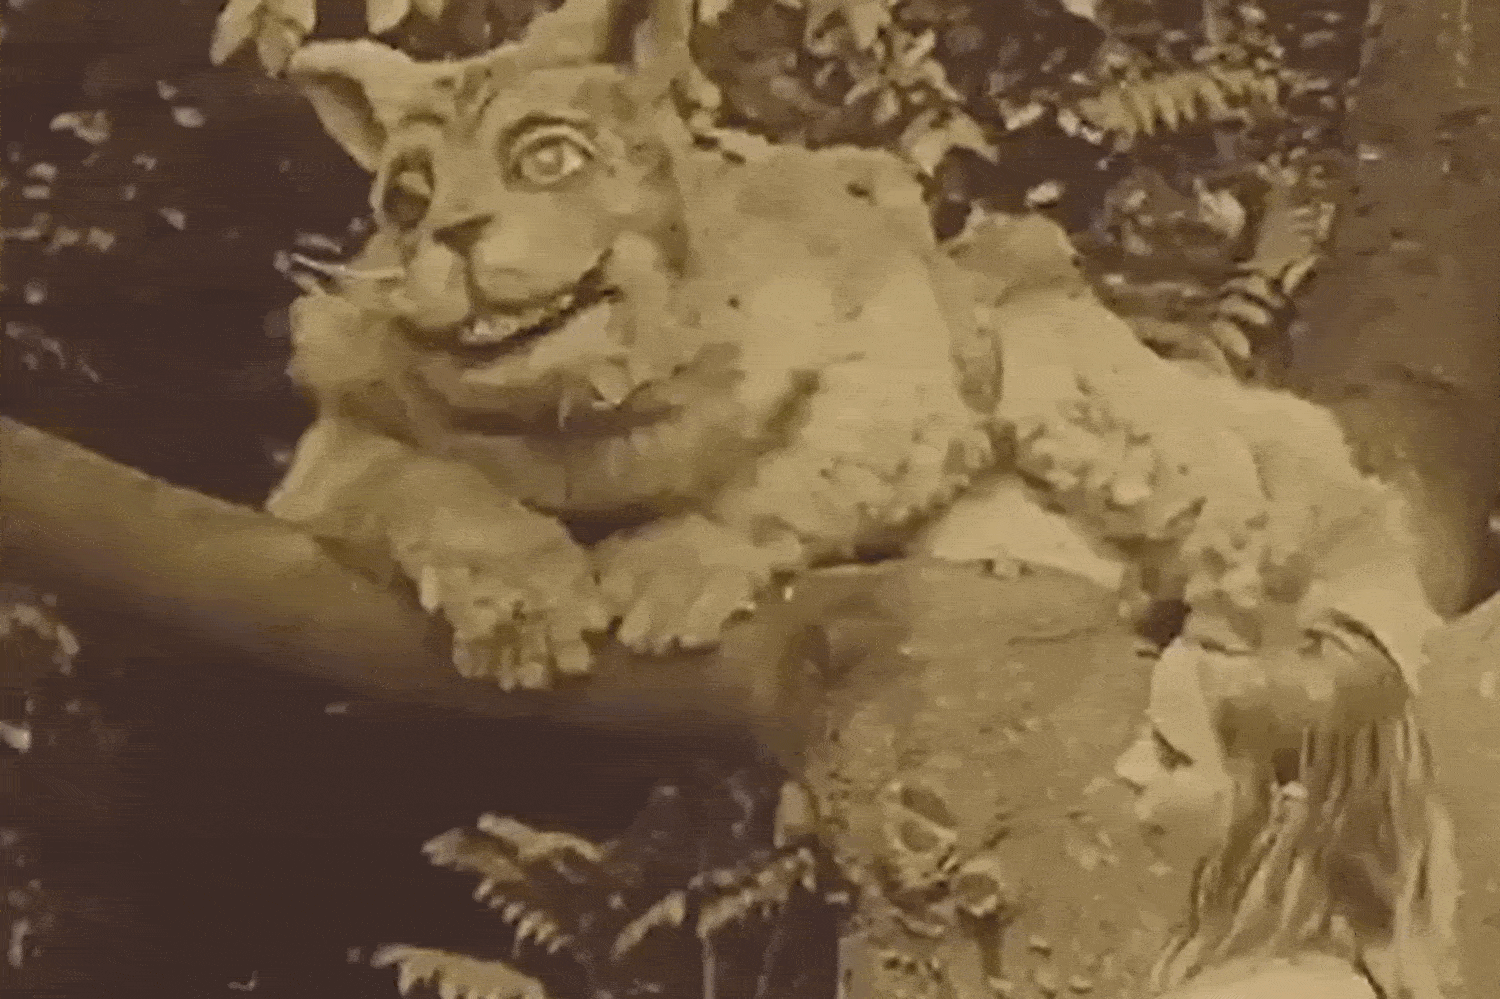 Scenes from 1915’s Alice in Wonderland